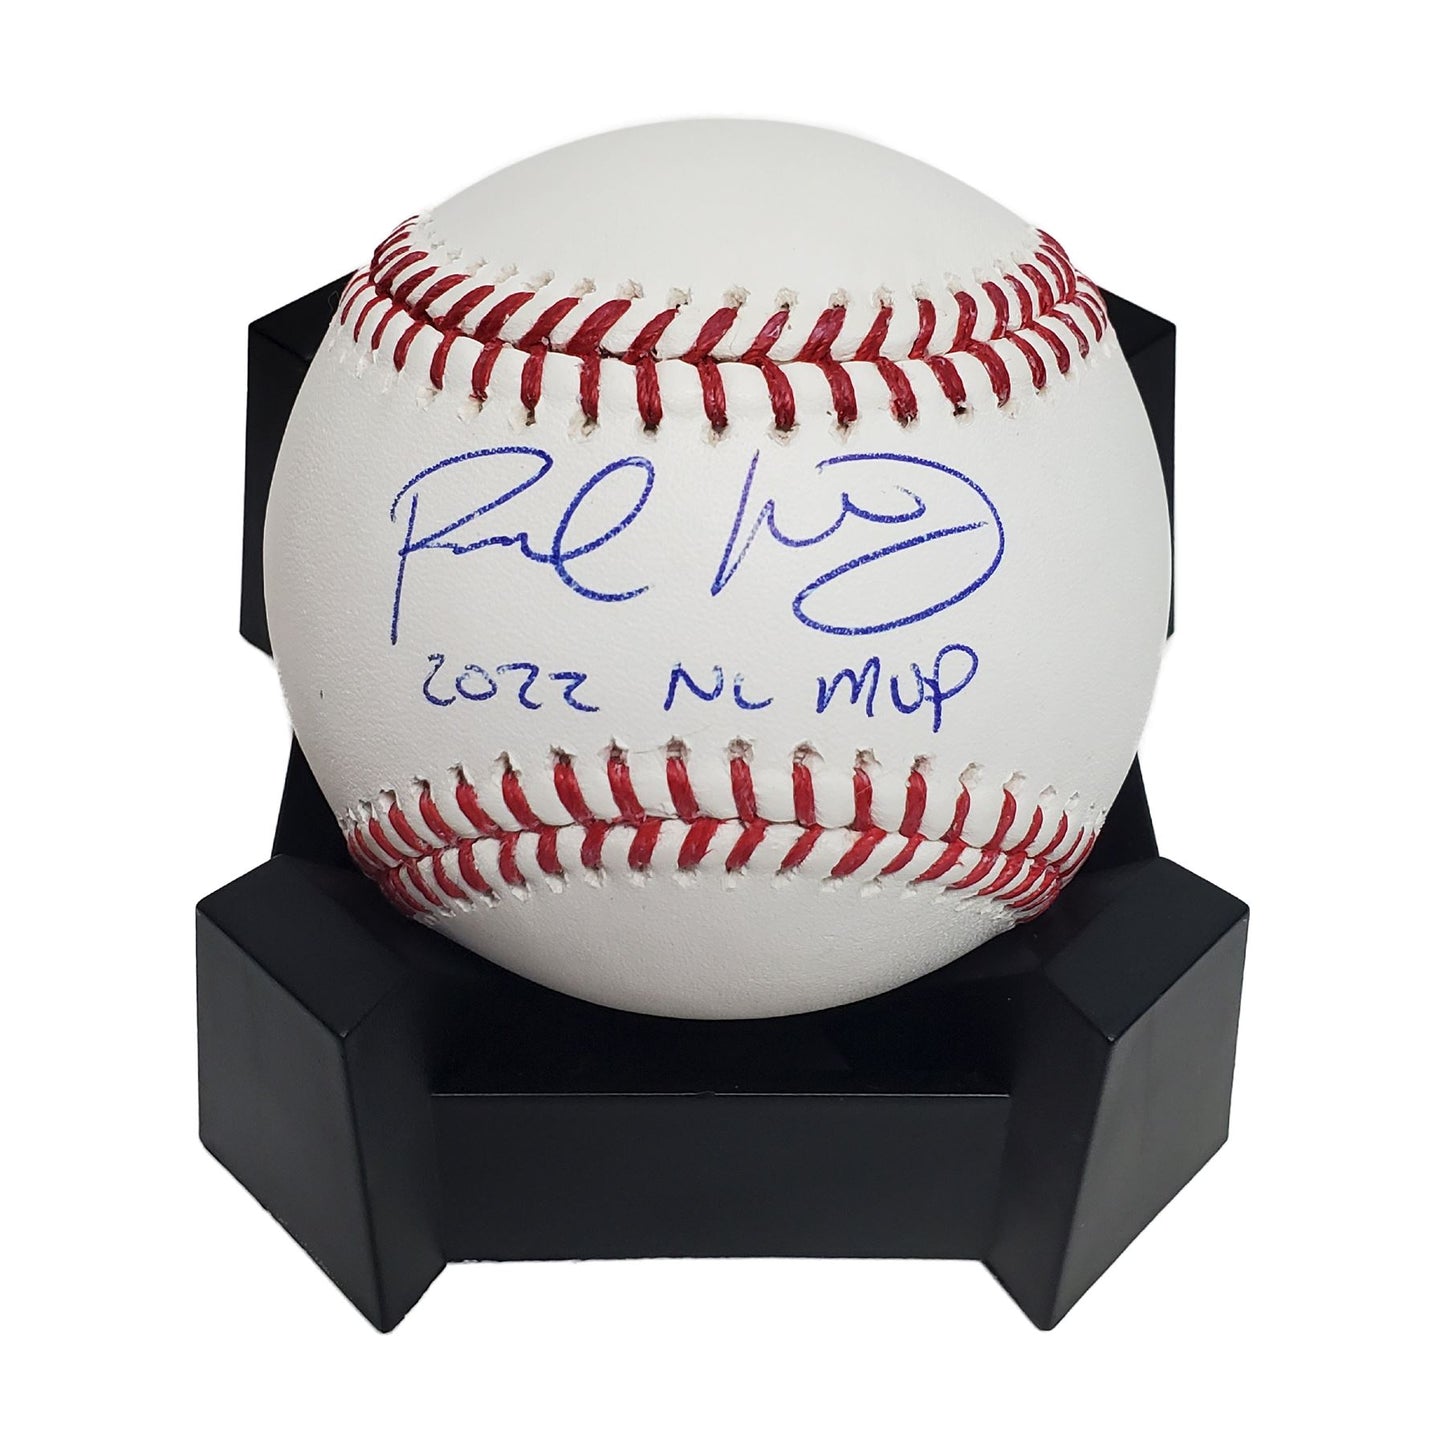 Paul Goldschmidt signed Major League Baseball w/2022 NL MVP Inscription-MLB